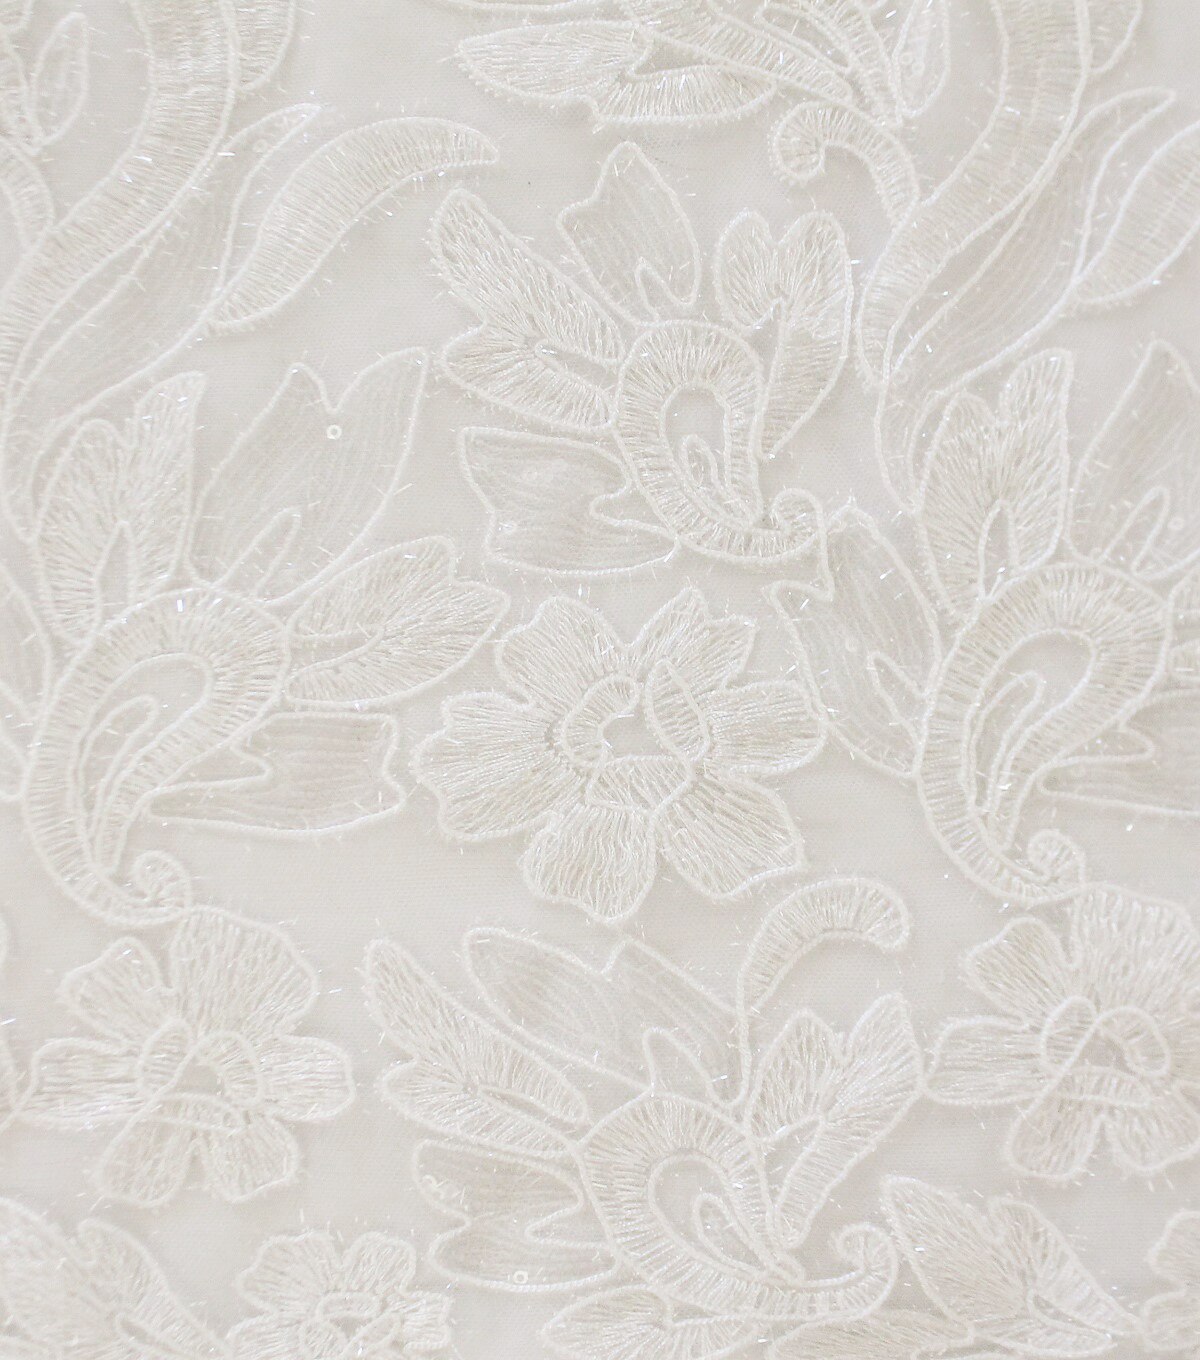 Embellished Mesh Fabric Translucent Sequin Floral | JOANN